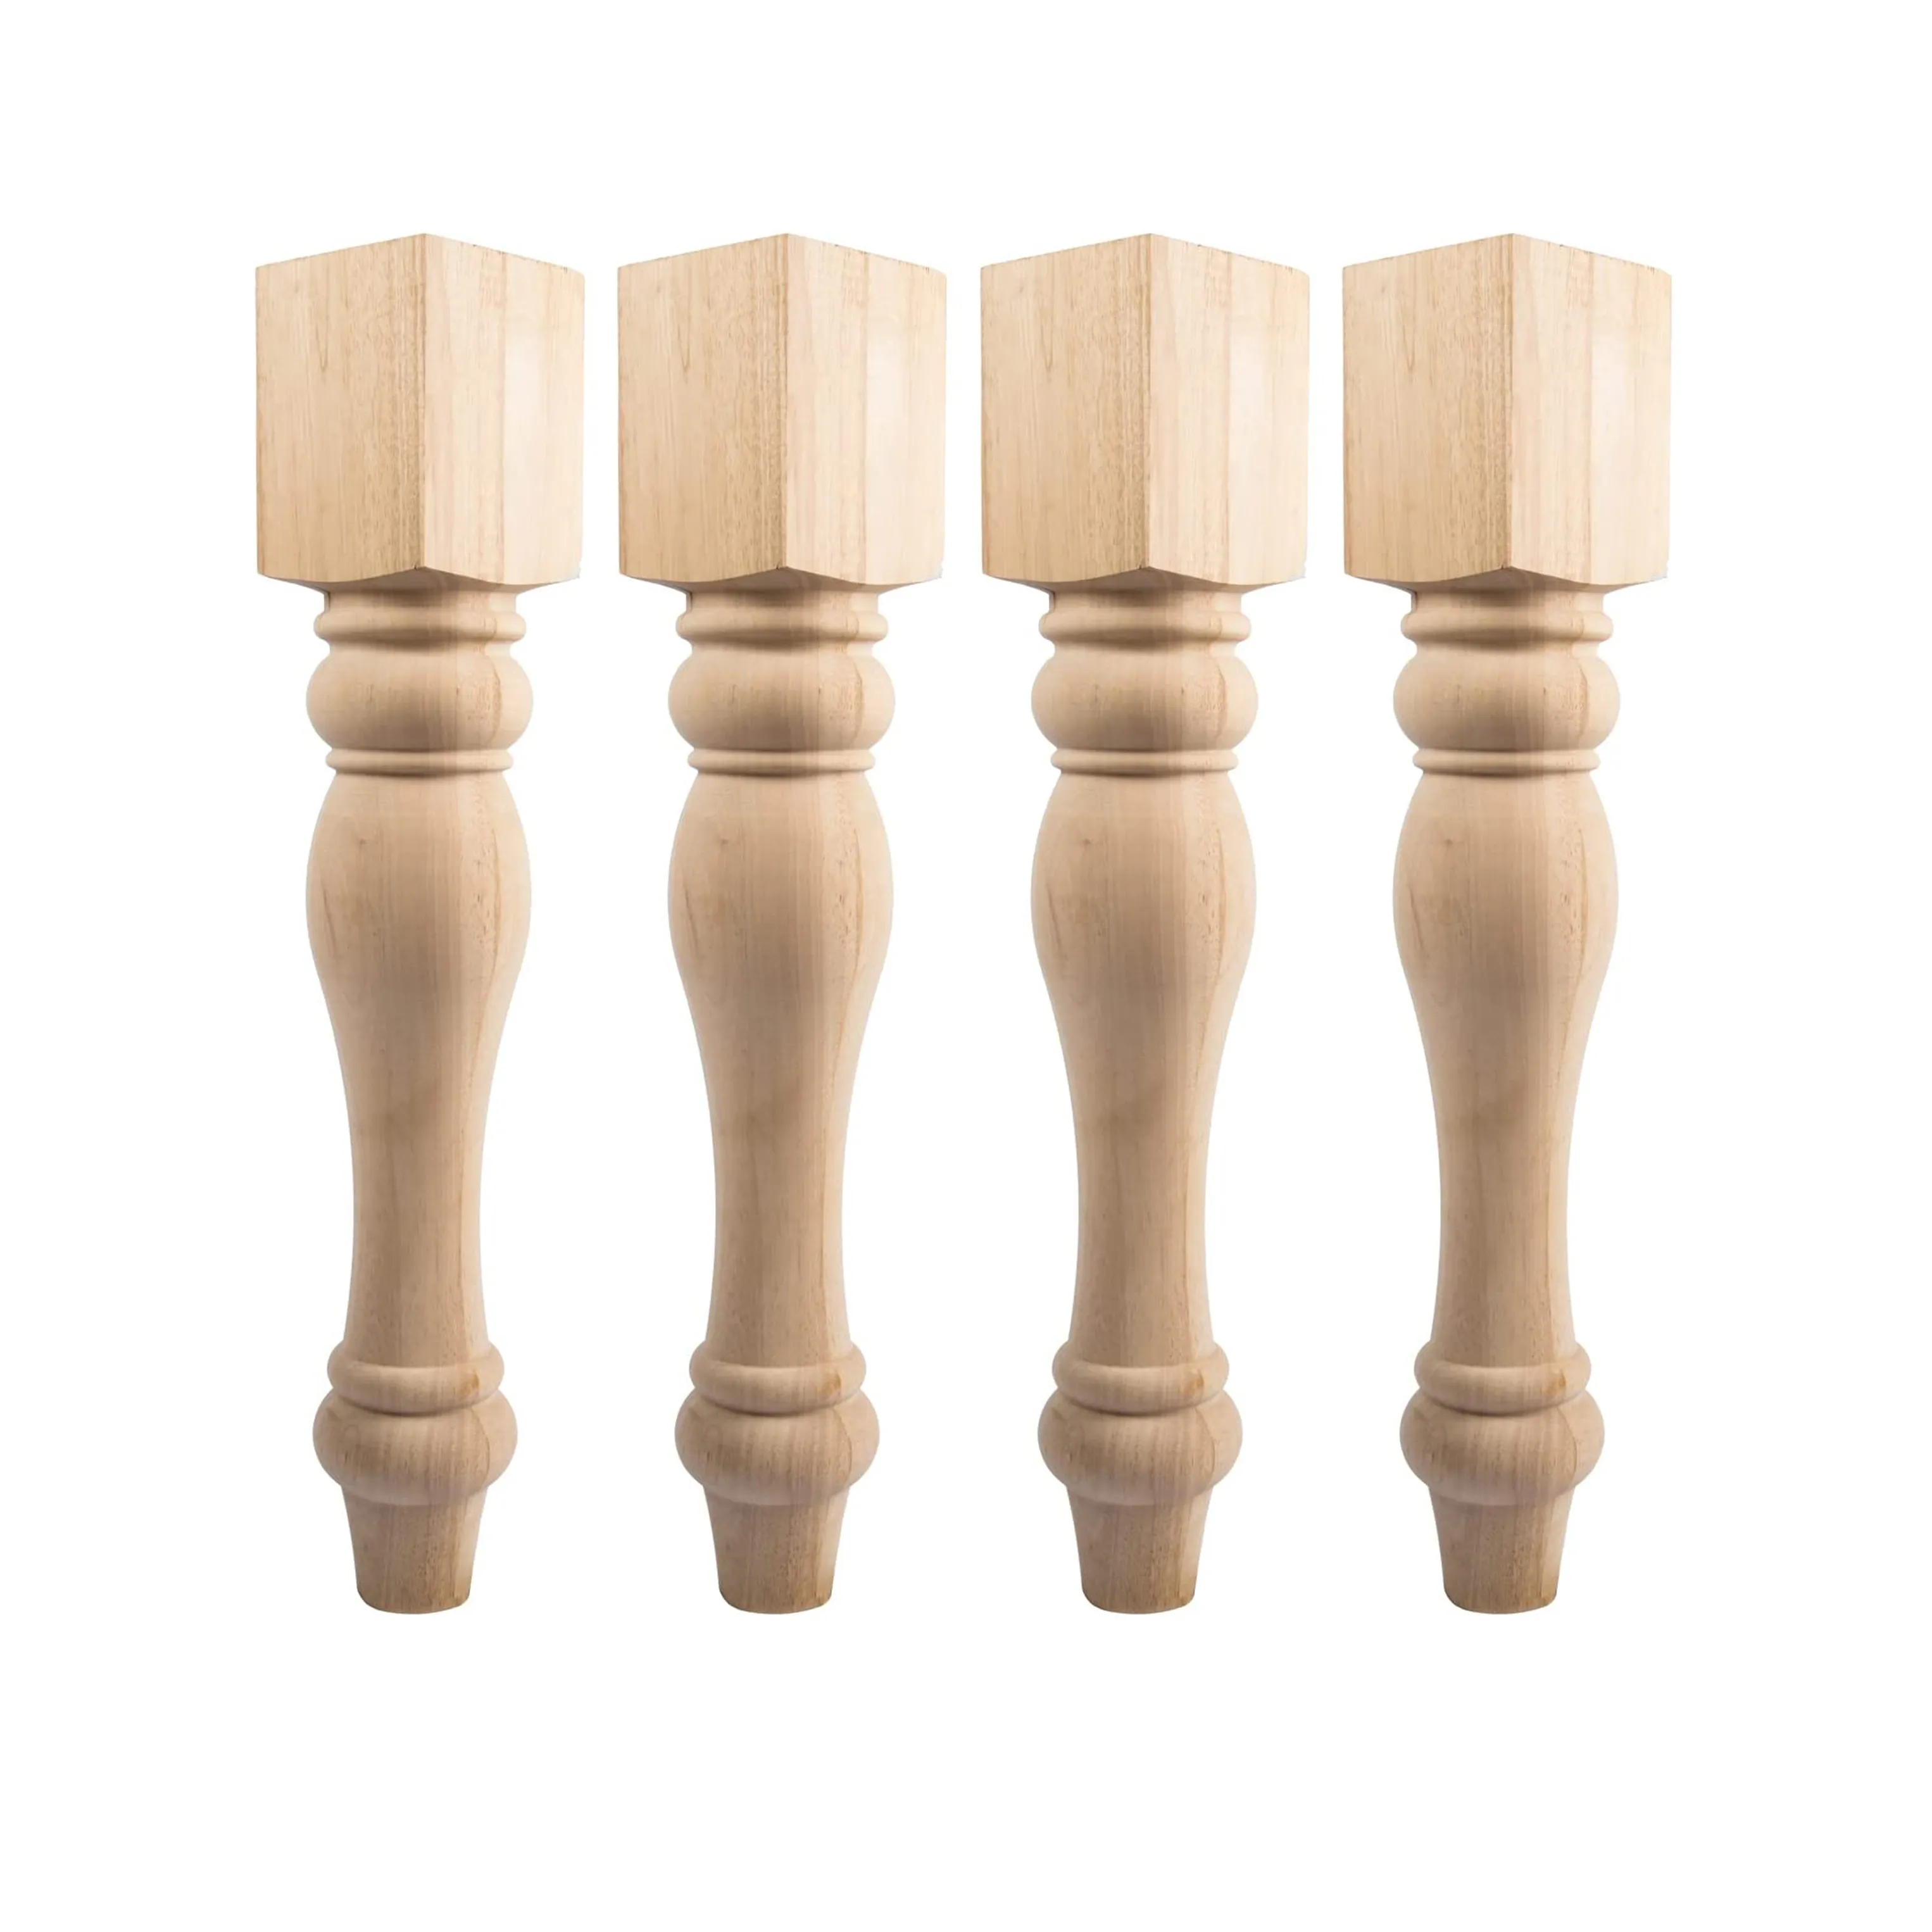 Антикварные ножки для мебели, деревянные аксессуары, квадратные шкафы, ножки, прямоугольные ножки для обеденного стола, деревянные ножки для стола индивидуального размера